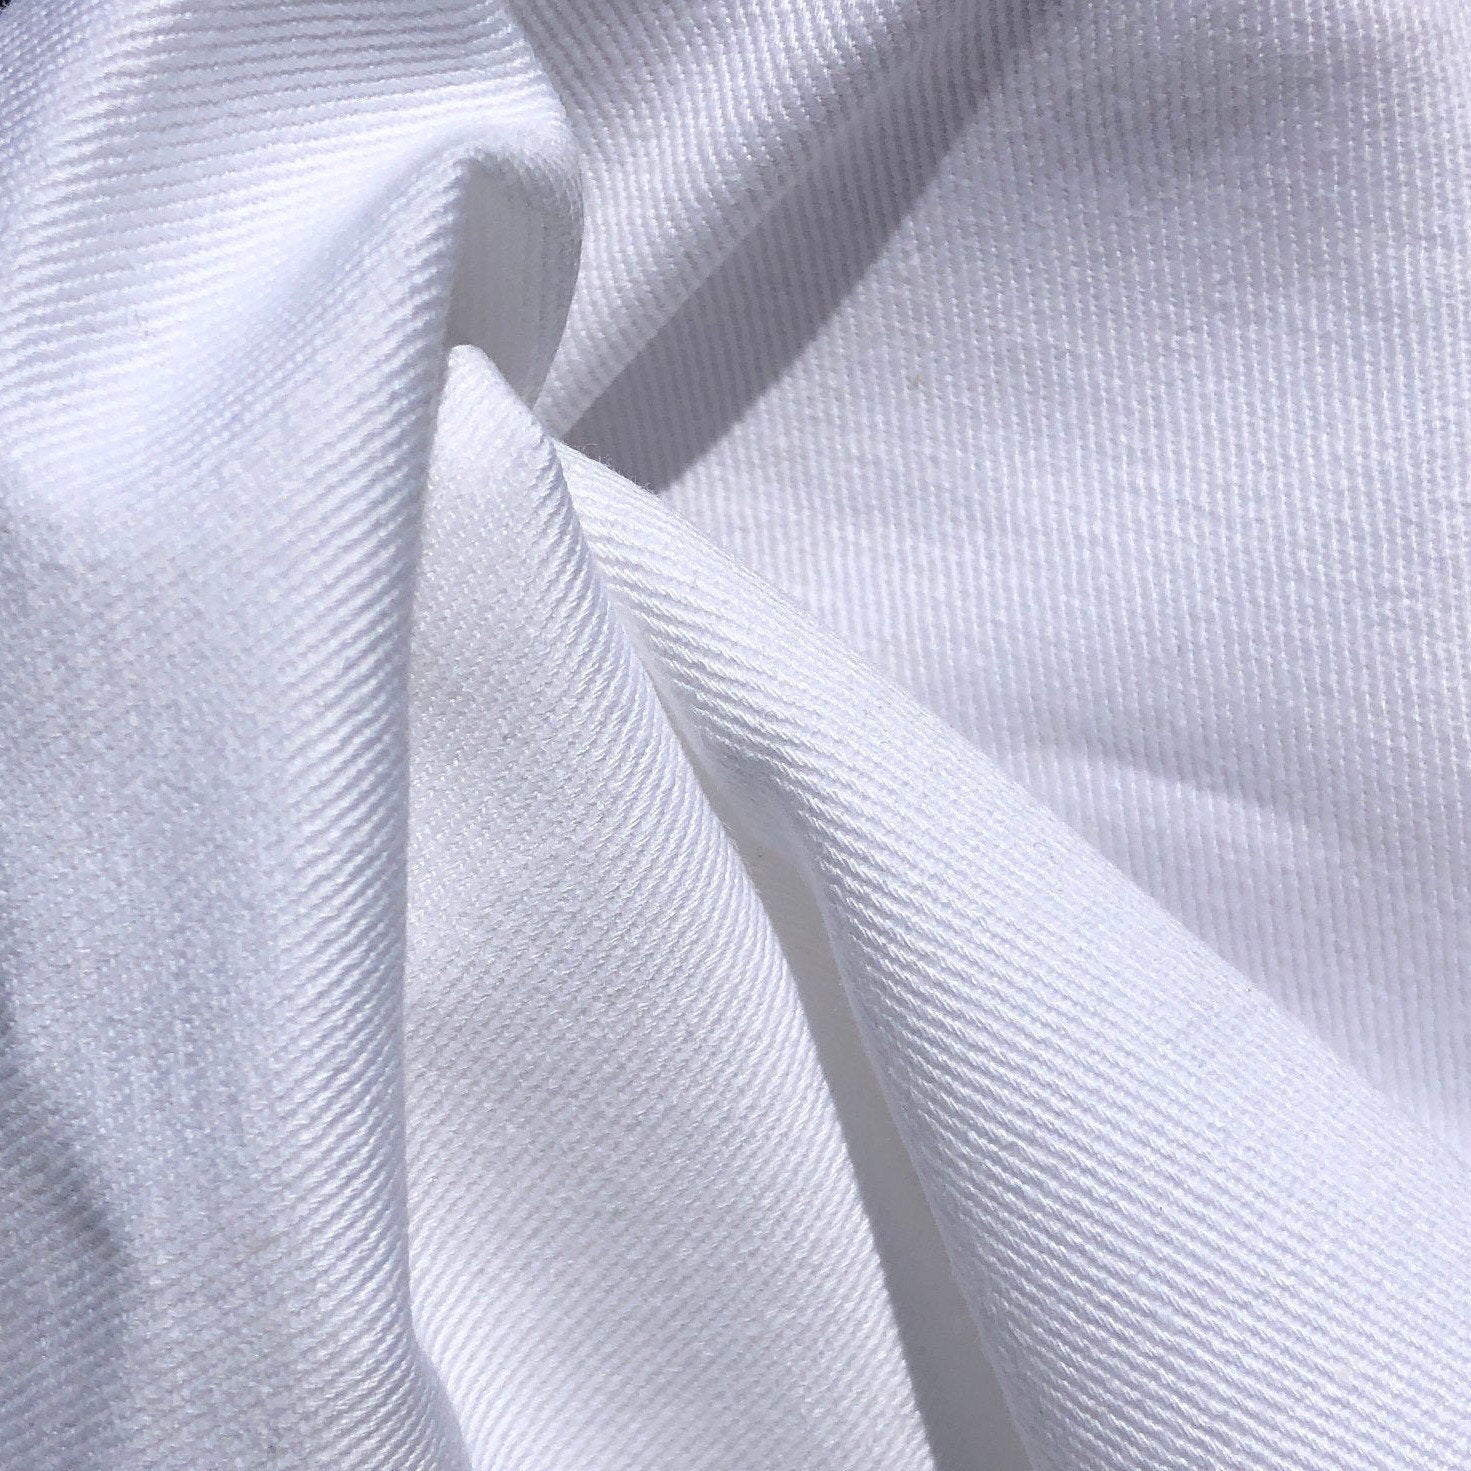 60 100% Pima Cotton Twill 8 OZ Tight Weave White Apparel Woven